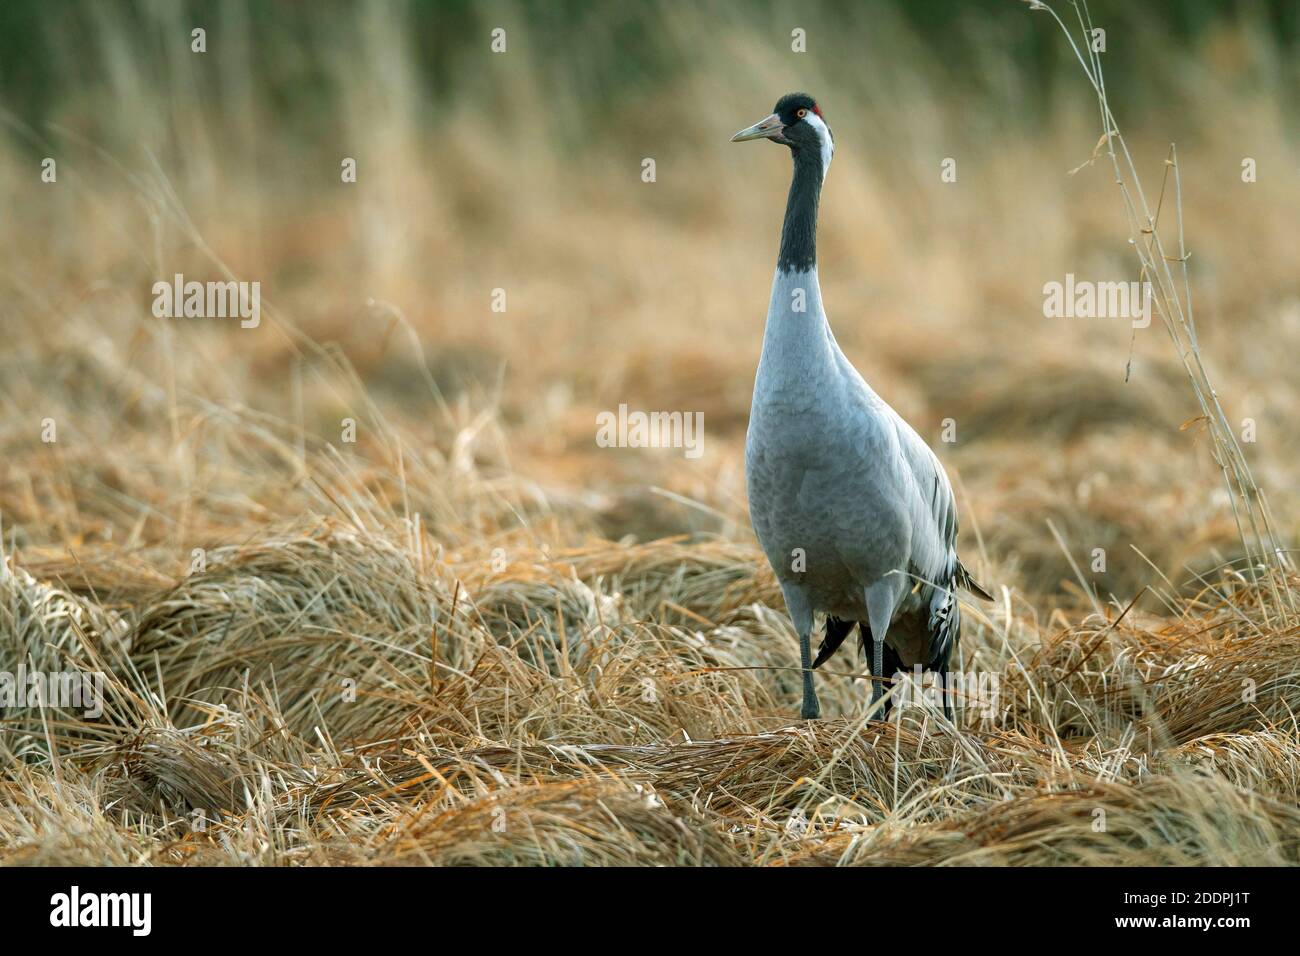 Common crane, Eurasian Crane (Grus grus), standing on grass at Lake Hornborga, Sweden, Vaestergoetland, Falkoeping Stock Photo